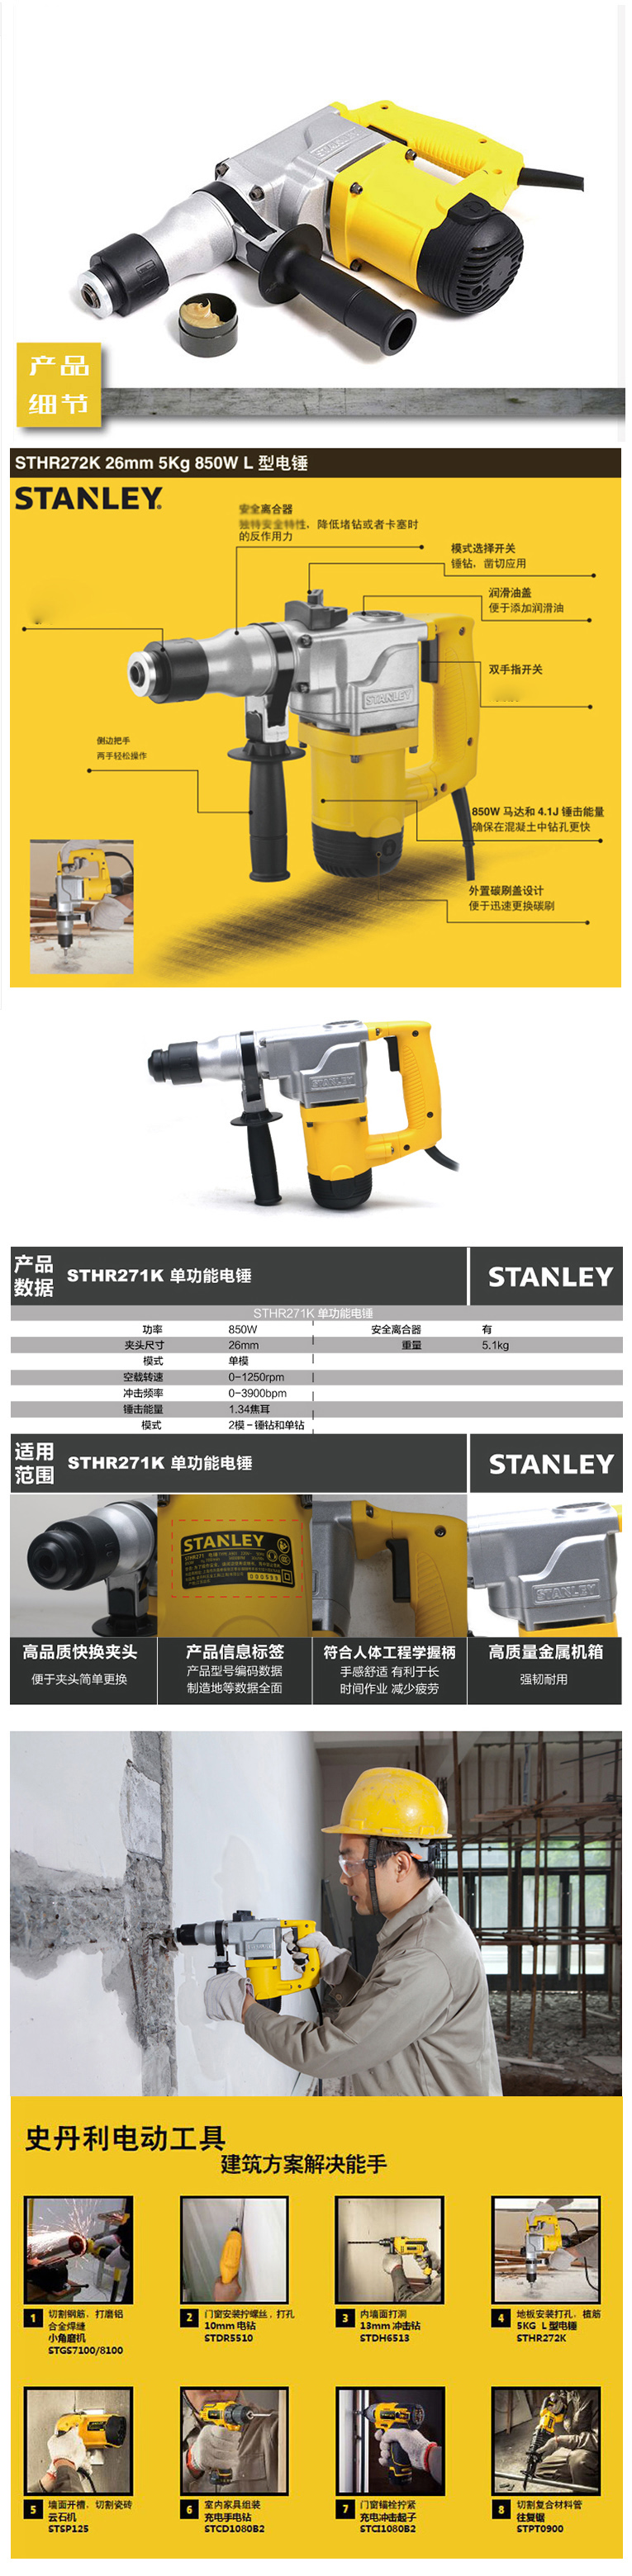 史丹利(Stanley) 电锤 STHR272K-A9 850W 26mm 5公斤双功能